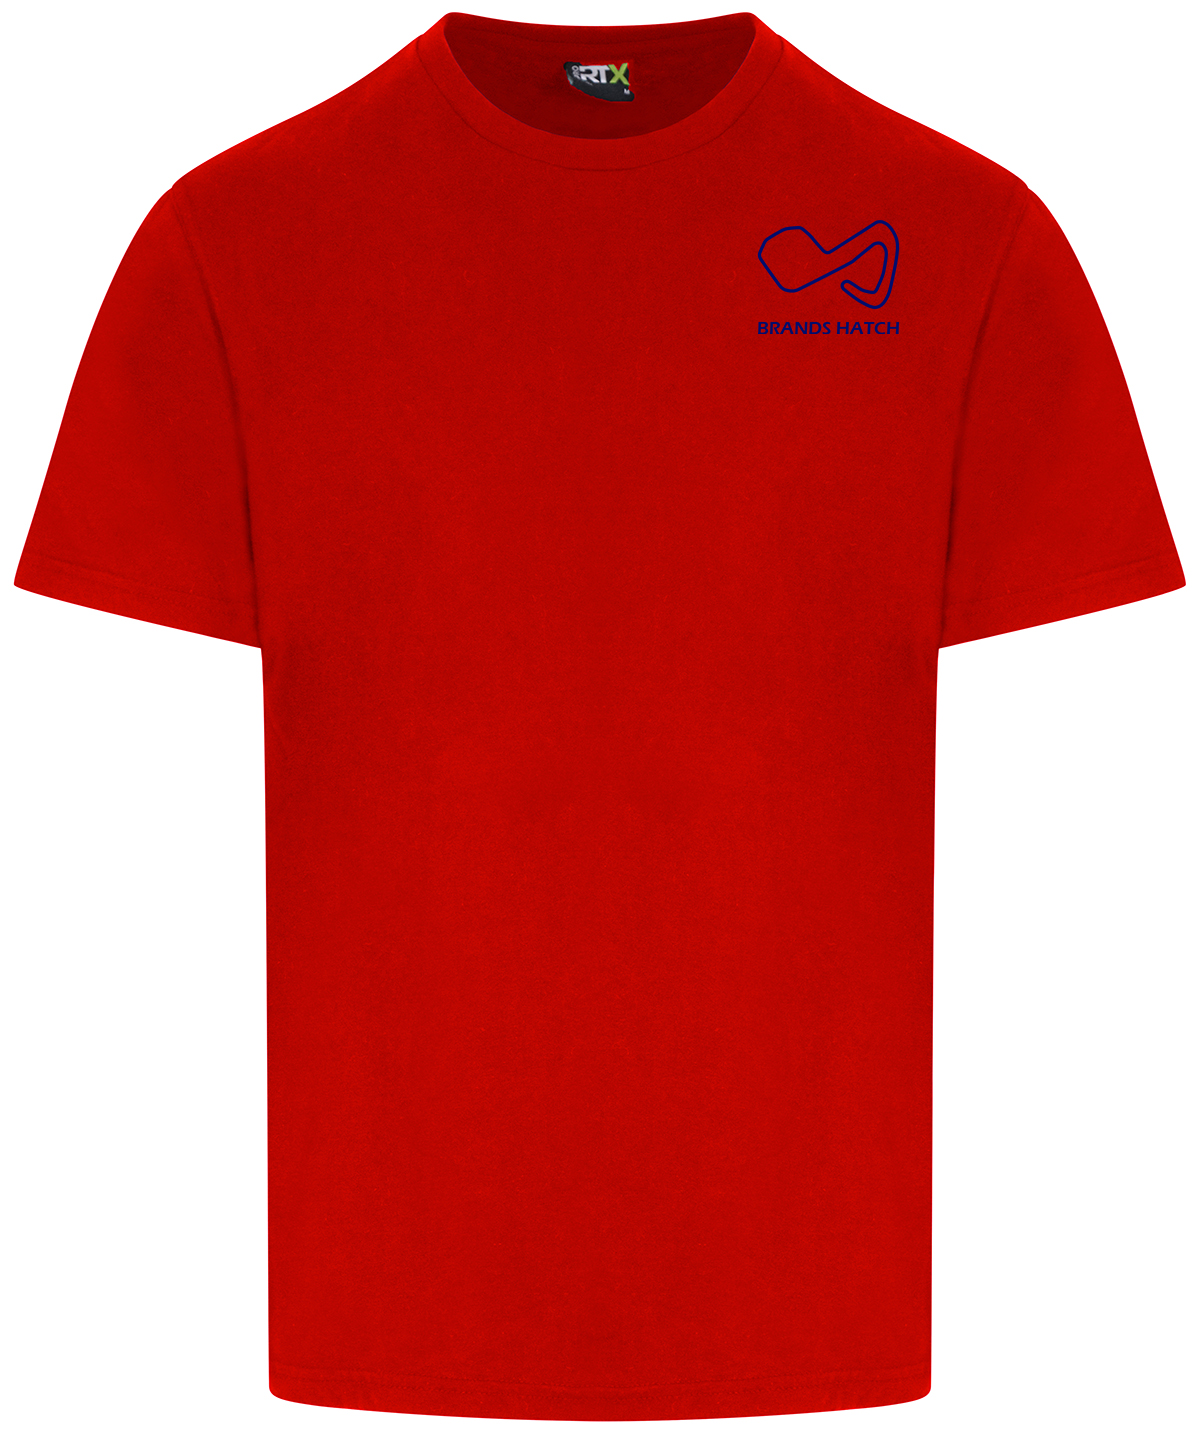 Brands Hatch T-Shirt